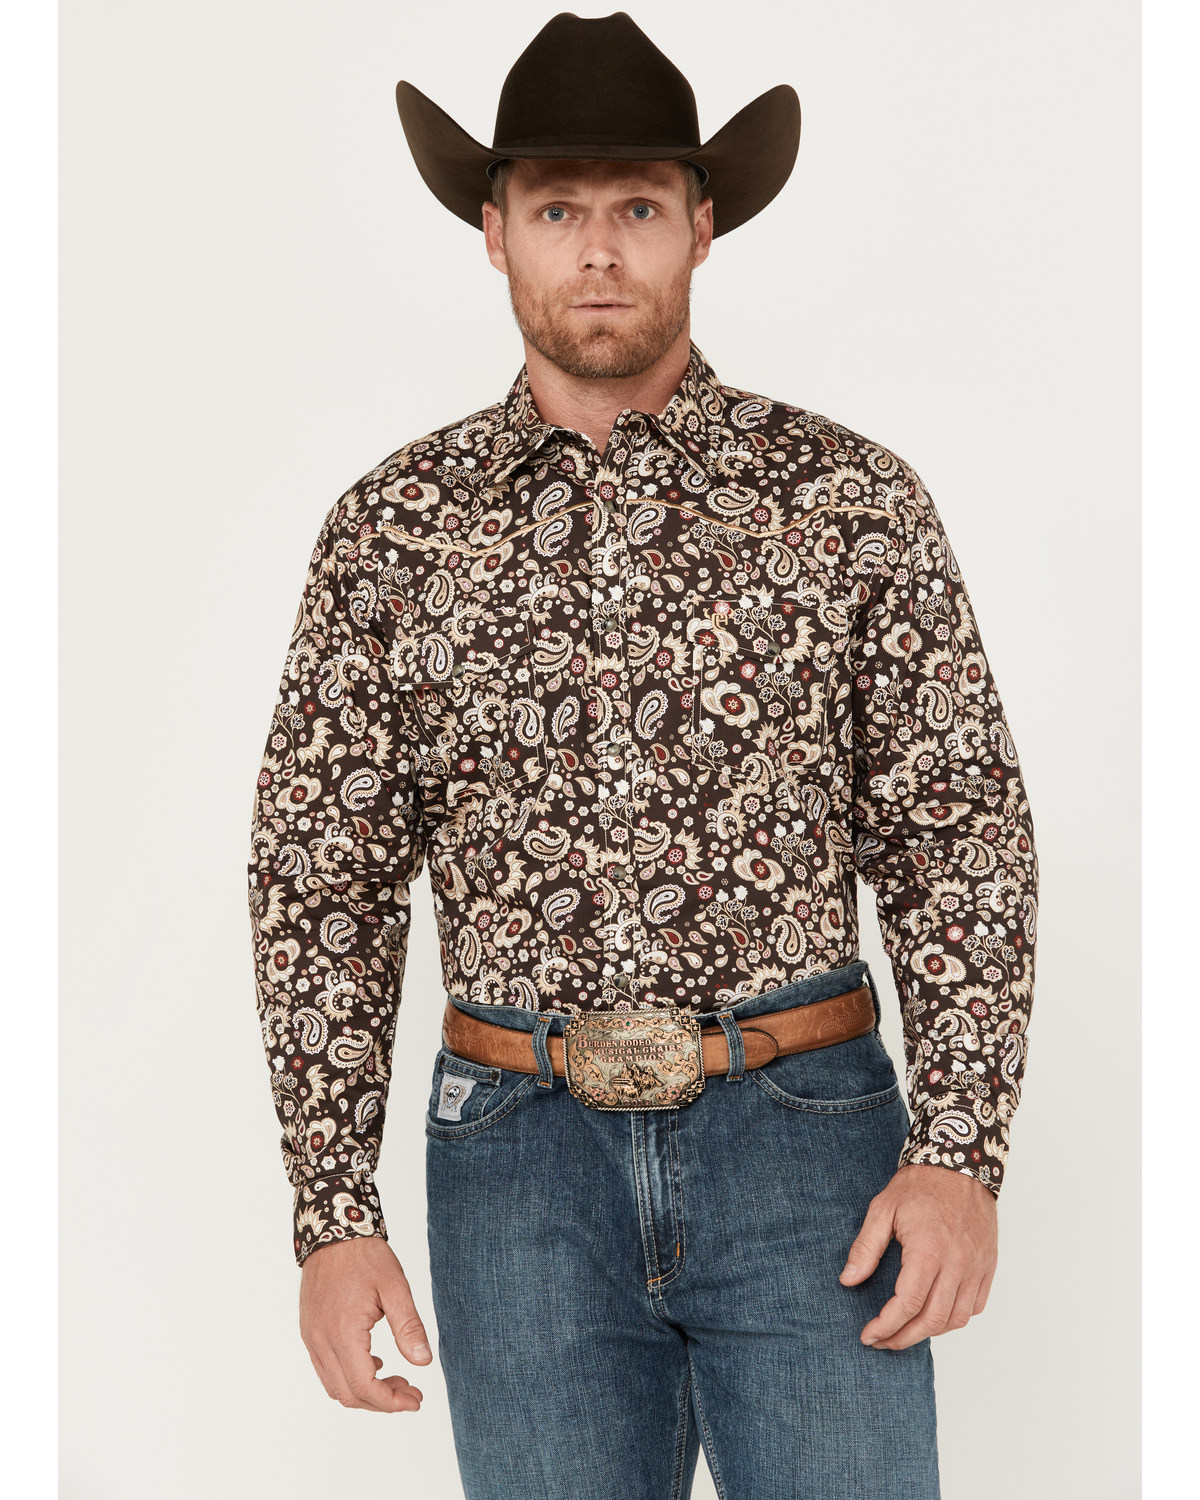 Cowboy Hardware Men's Mixed Paisley Print Long Sleeve Snap Western Shirt